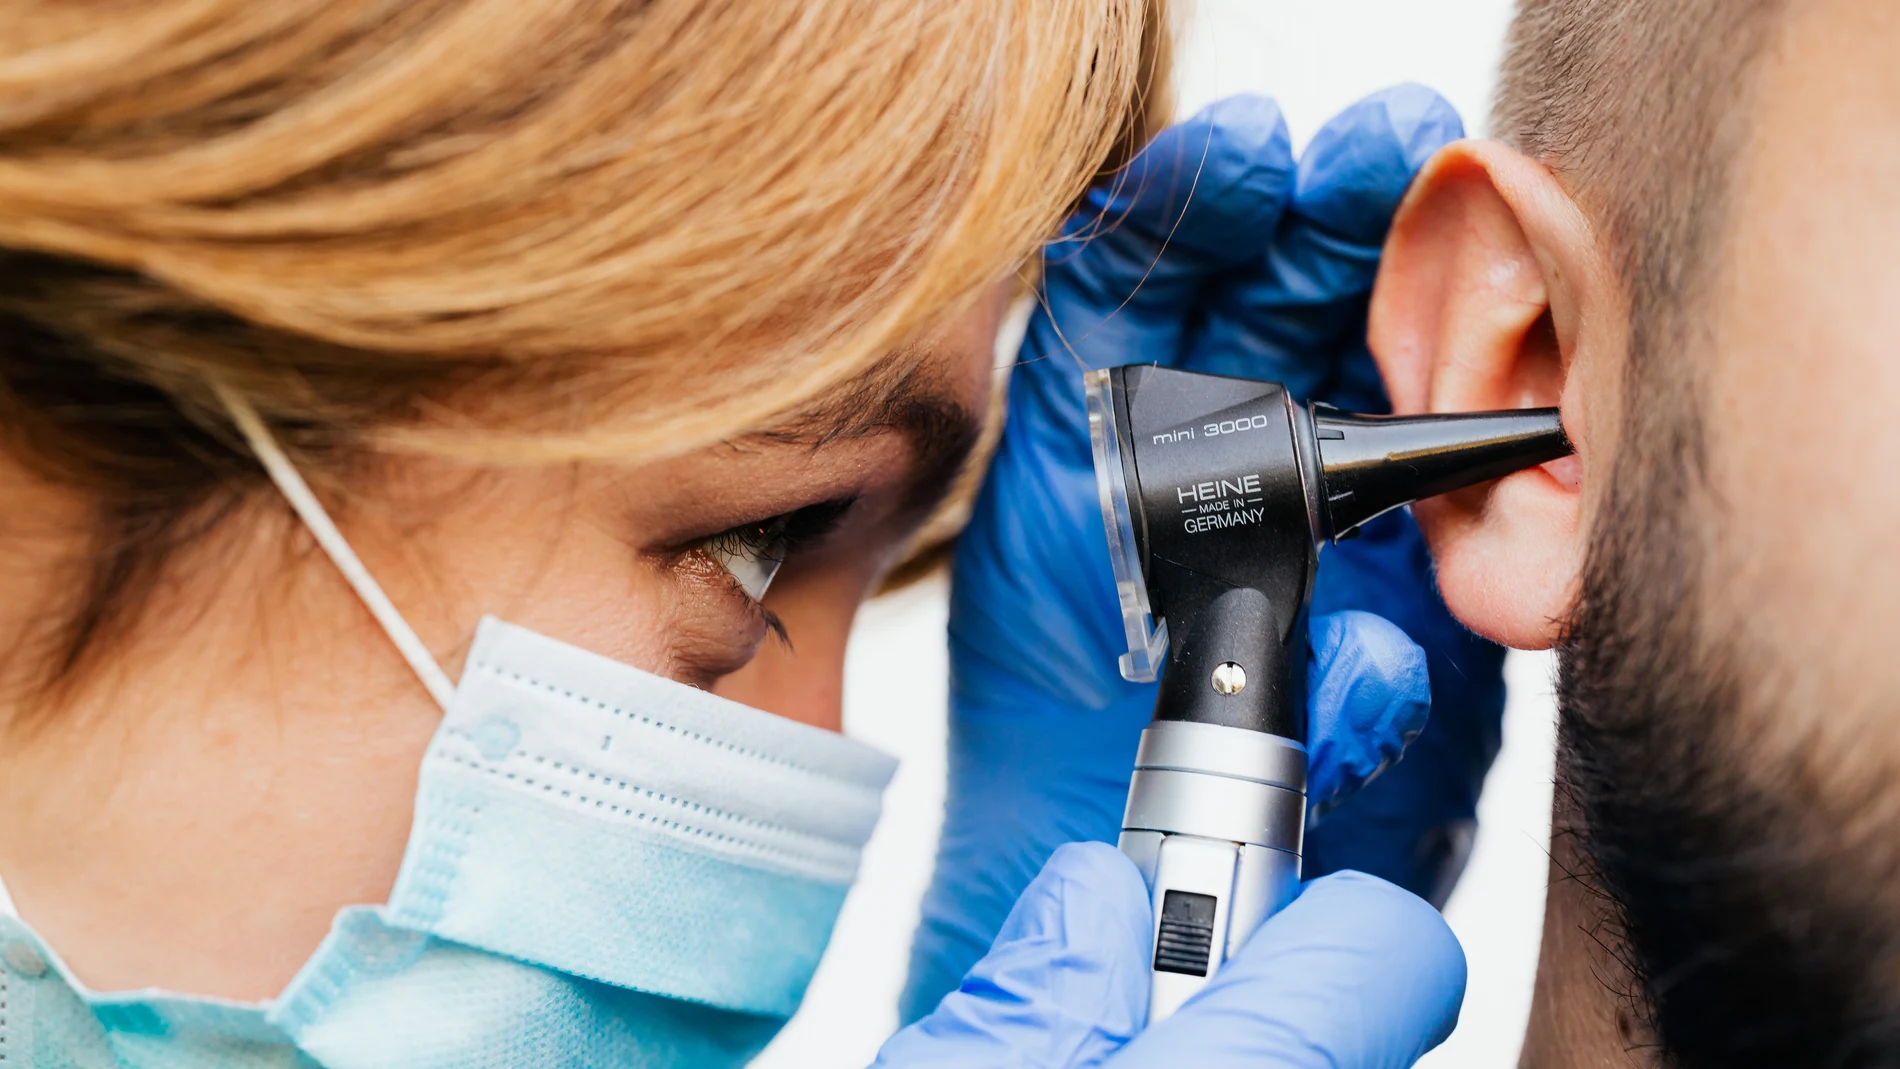 El síndrome de Ramsay Hunt suele afectar al oído y paralizar un lado de la cara